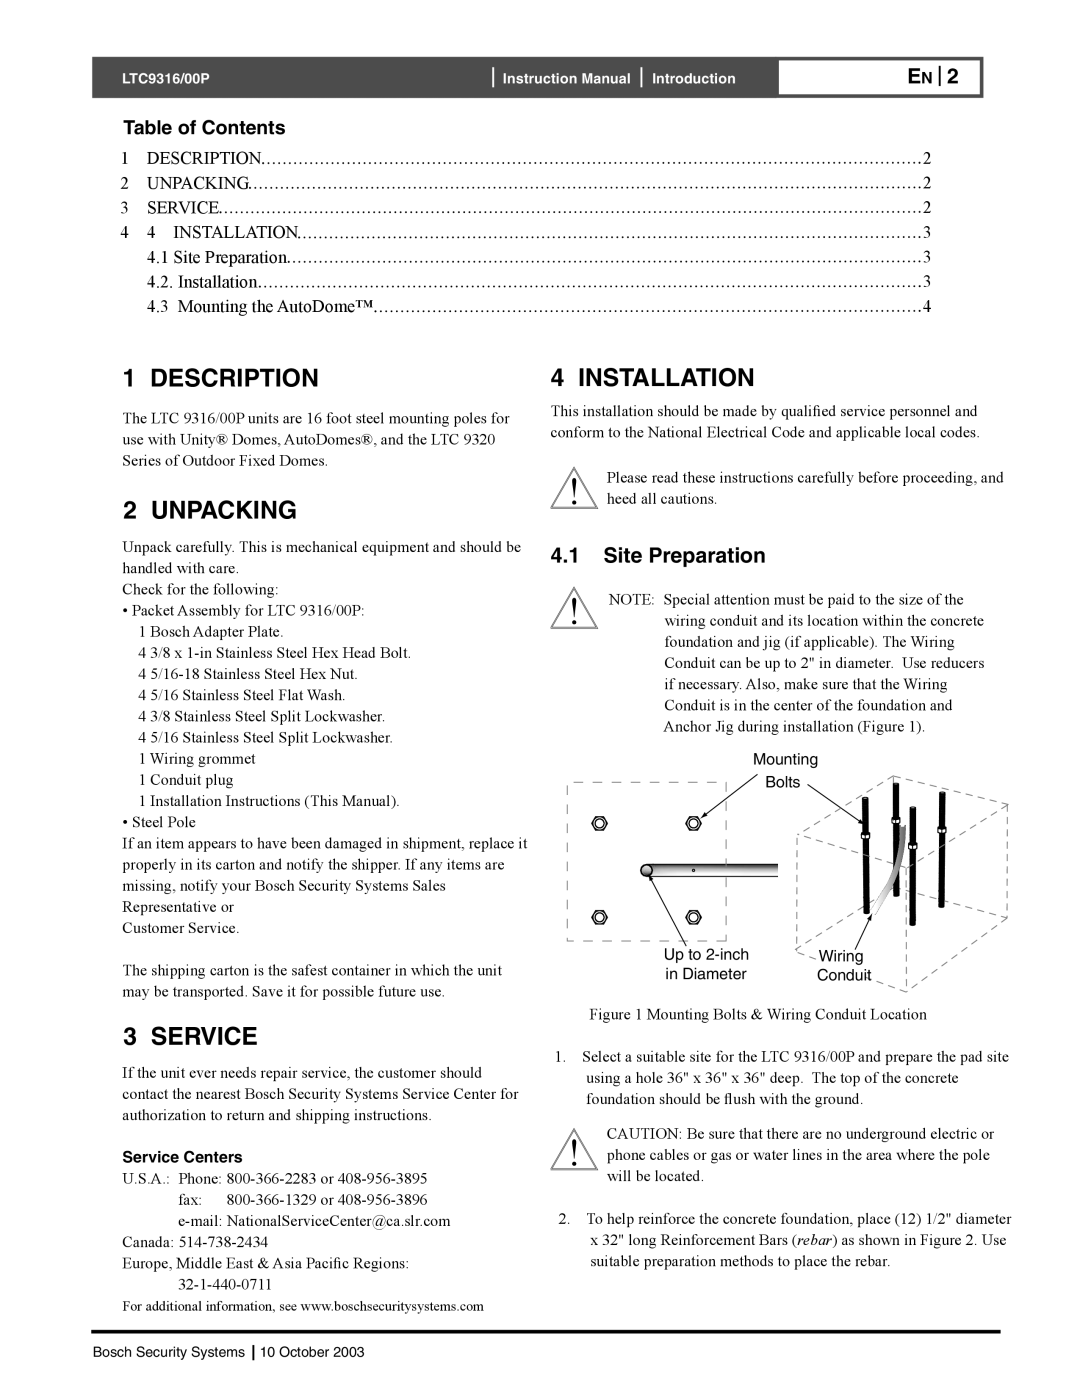 Bosch Appliances LTC9316, 00P 4.1Site Preparation, Description, Unpacking, Installation, Service, Table of Contents 